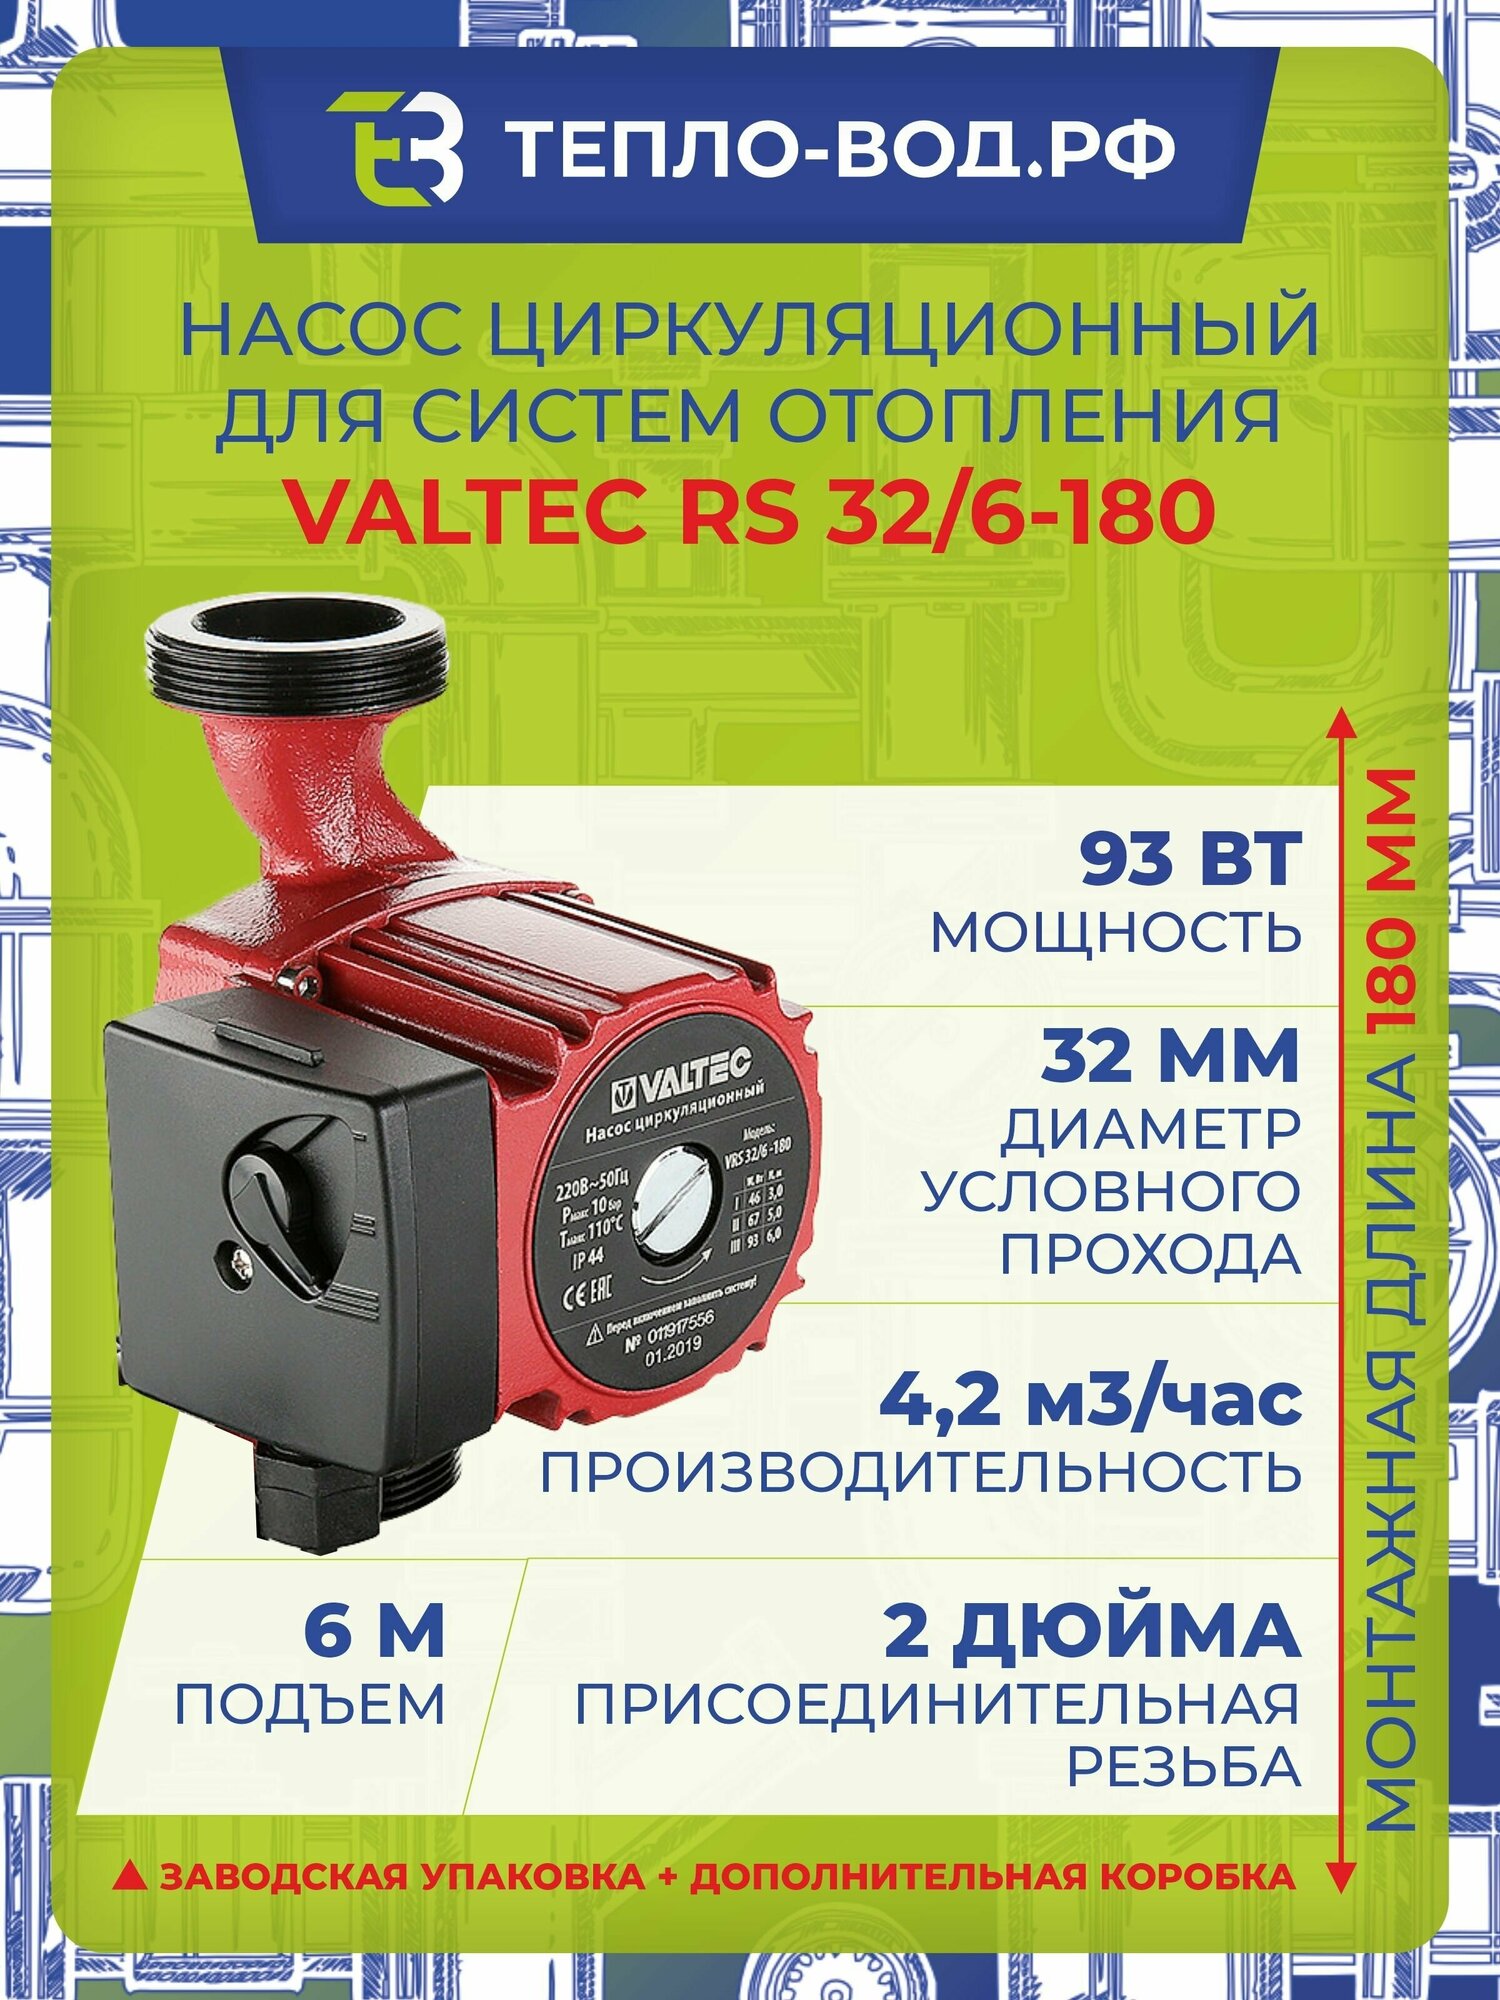 Циркуляционный насос VALTEC VRS 32/6-180 (93 Вт)